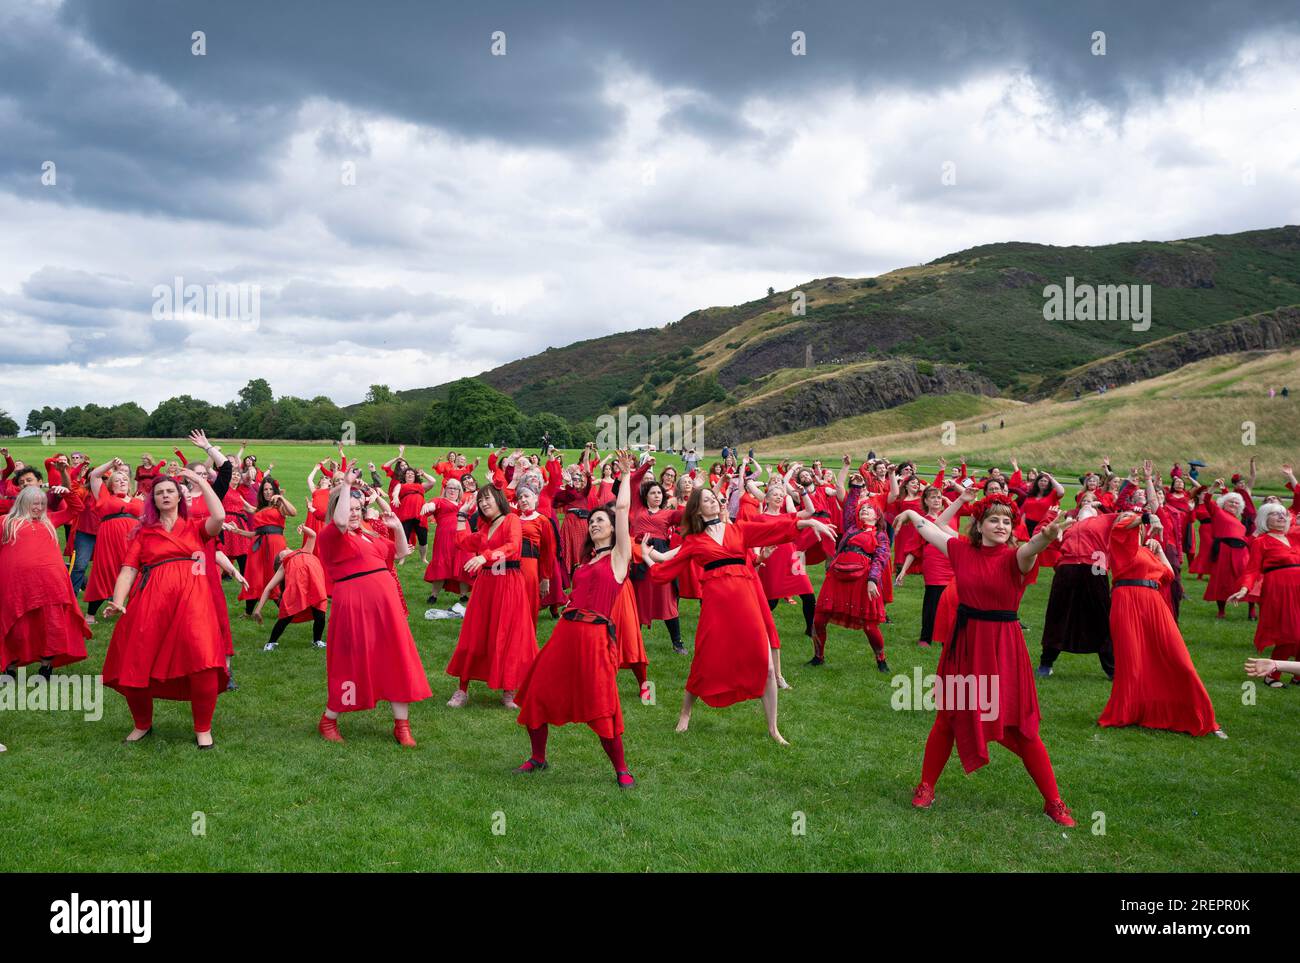 Édimbourg, Écosse, Royaume-Uni. 29 juillet 2023. Des dizaines de femmes portant des robes rouges se rassemblent à Holyrood Park pour danser et célébrer la Journée annuelle des hauteurs de Wuthering - un hommage à la musique de Kate Bush. Iain Masterton/Alamy Live News Banque D'Images